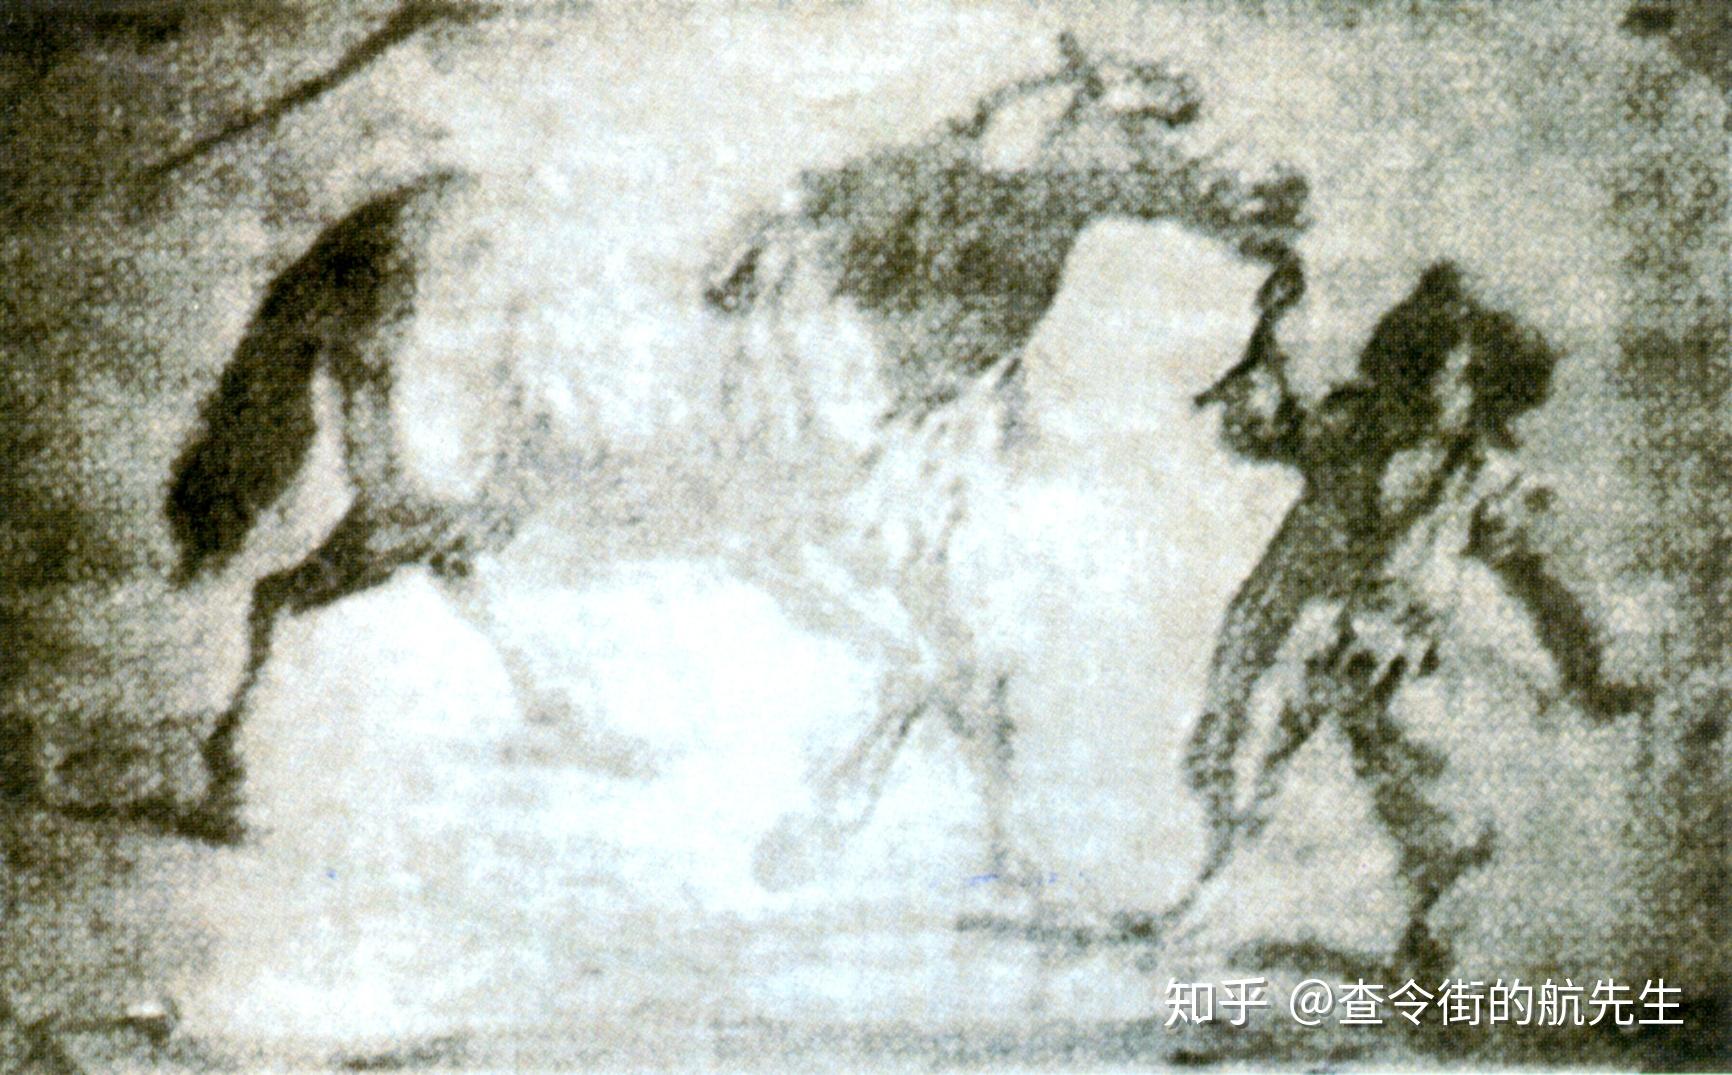 敦煌壁画中最早的四天王像_佛教